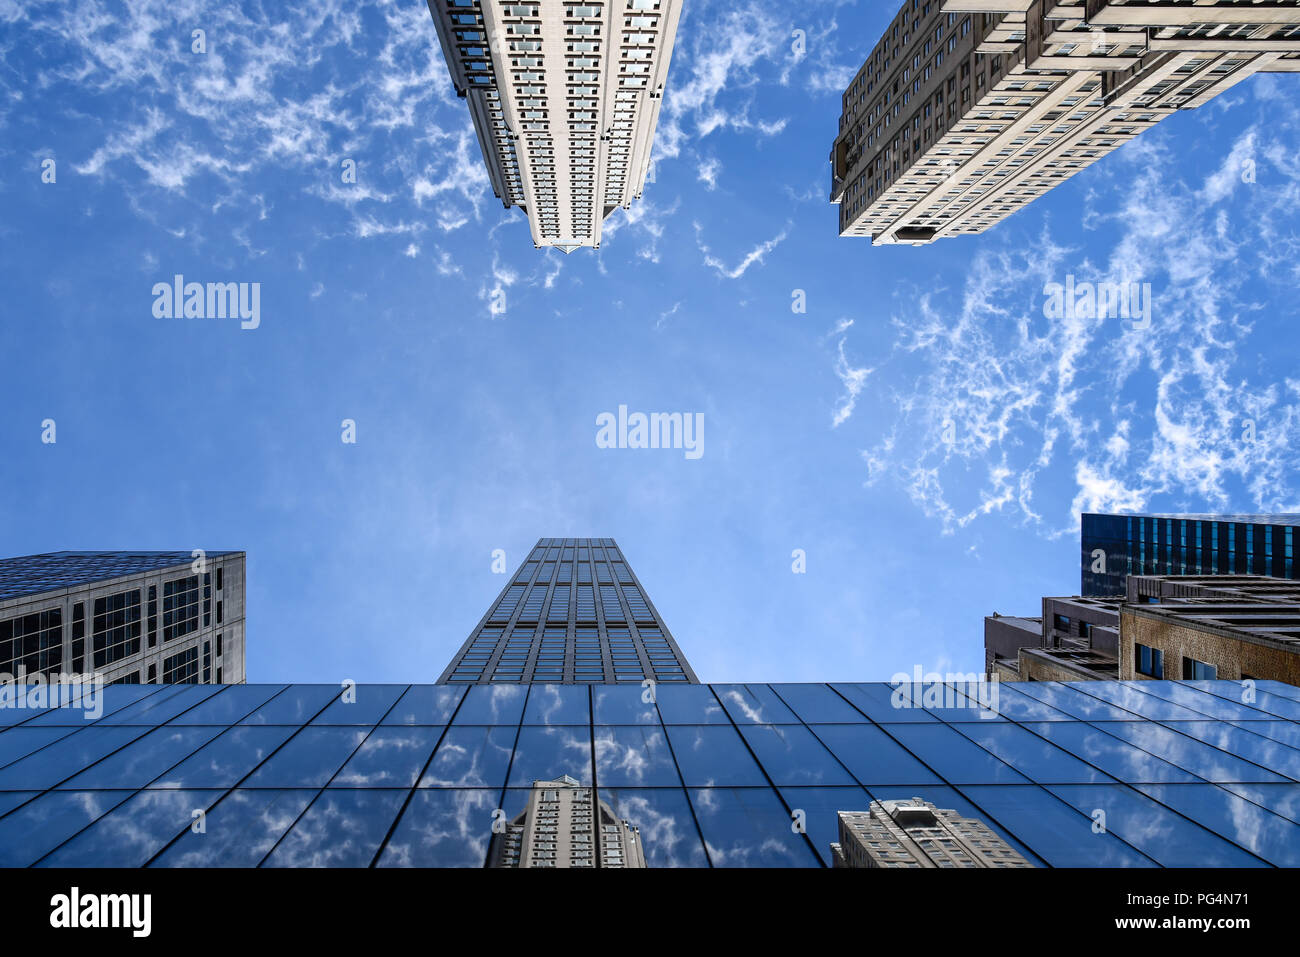 La ville de New York, USA - 21 juin 2018 : 432 Park Avenue building et d'autres gratte-ciel contre ciel bleu Banque D'Images